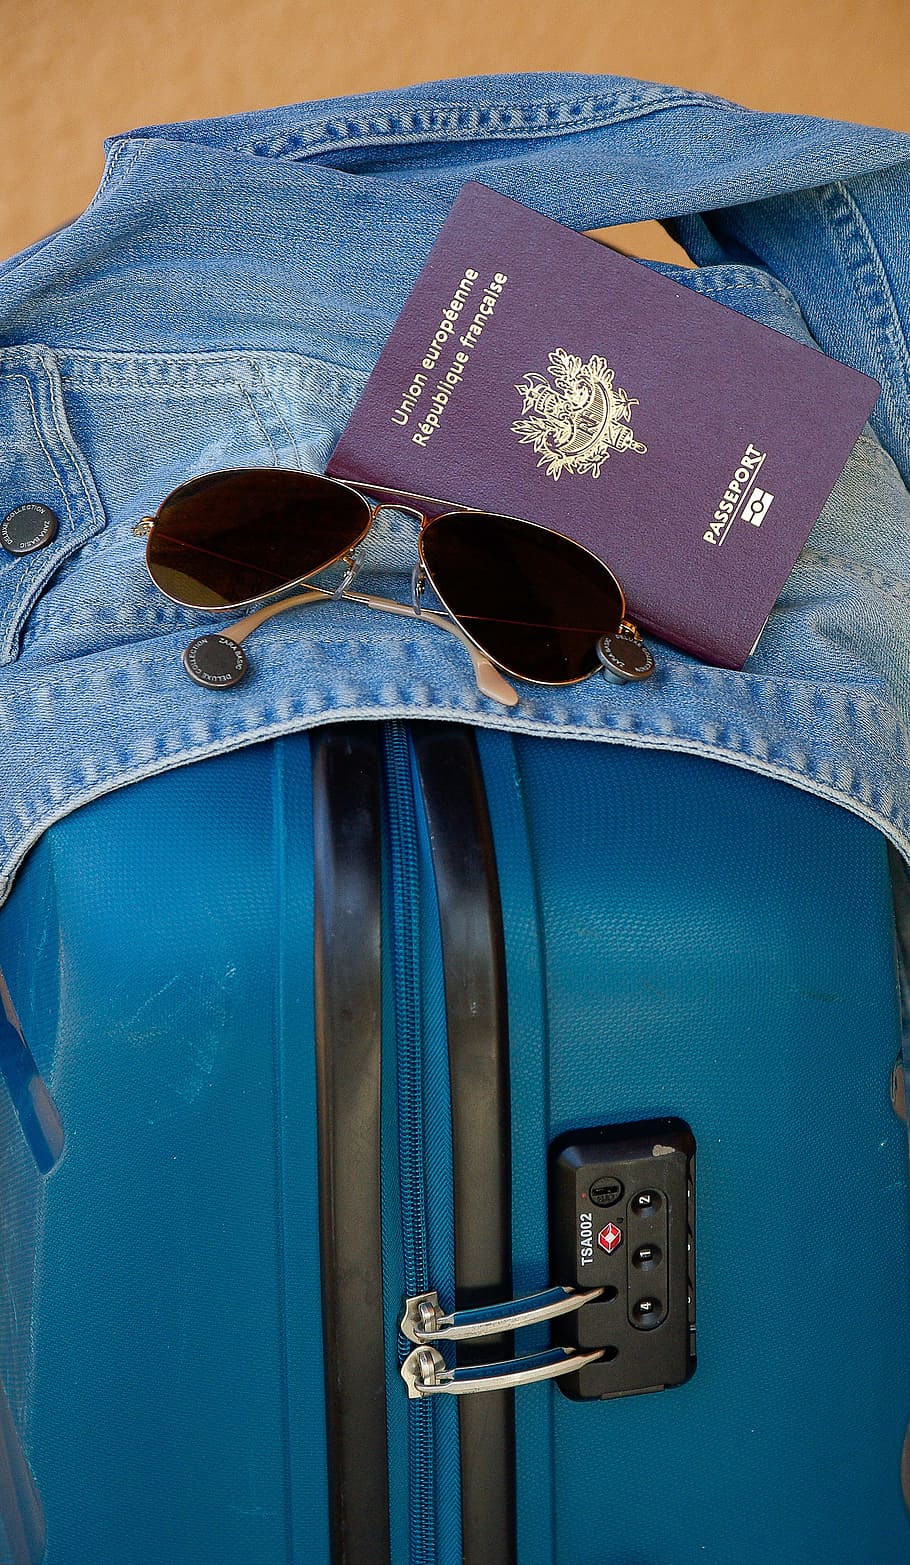 飛行士のサングラス, 横, パスポートの本, デニムジャケット, スーツケース, 出発, 旅行, パスポート, サングラス, 青